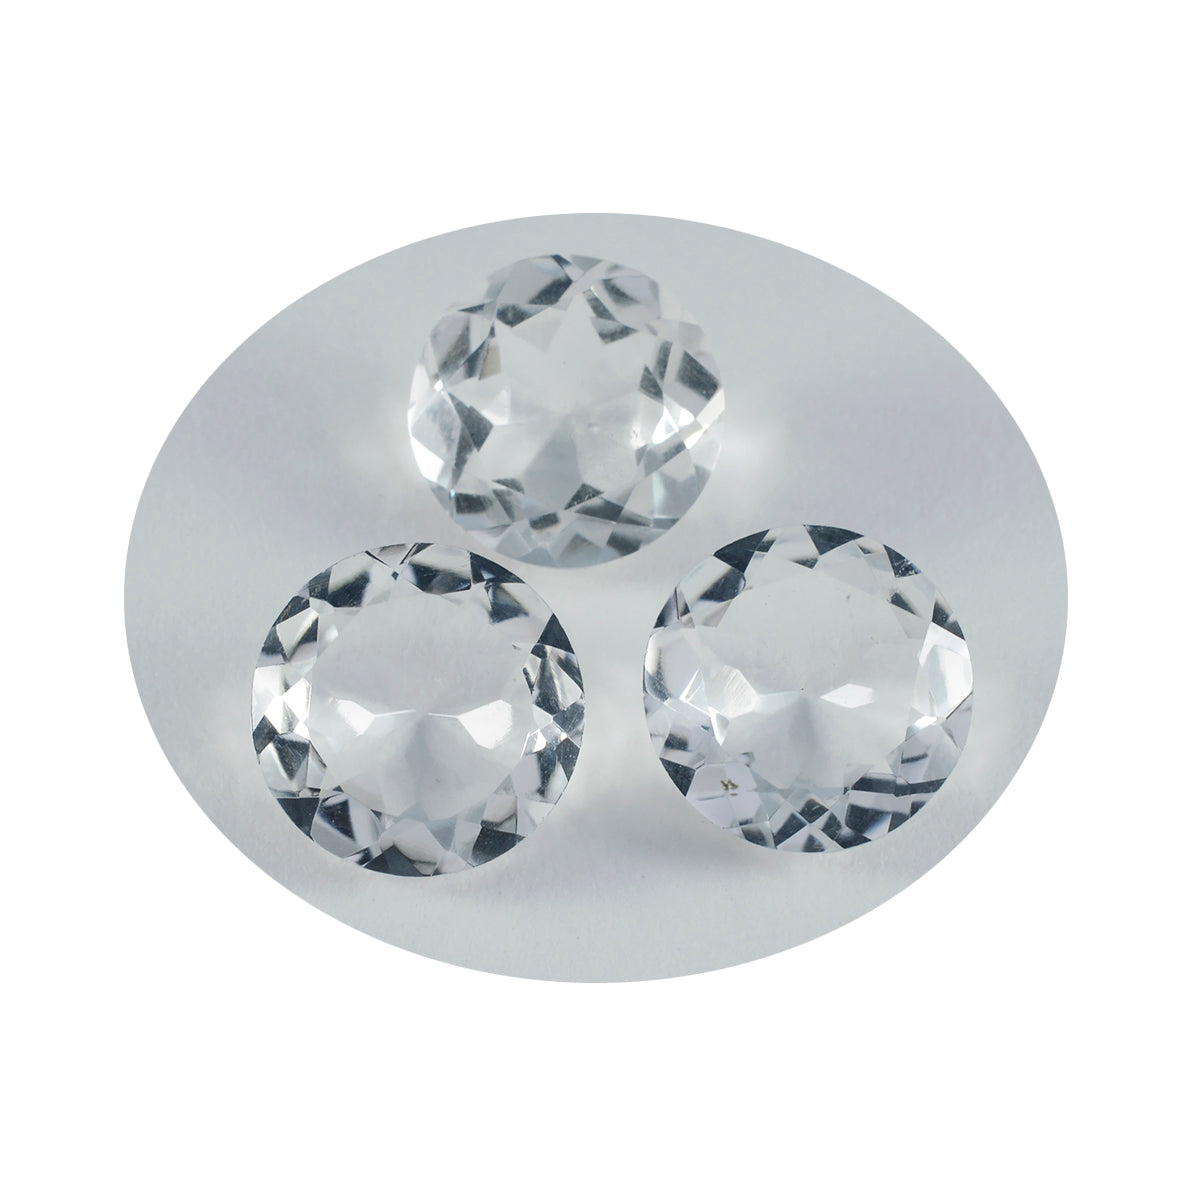 Riyogems 1 pieza de cuarzo de cristal blanco facetado 15x15 mm forma redonda hermosa piedra preciosa de calidad